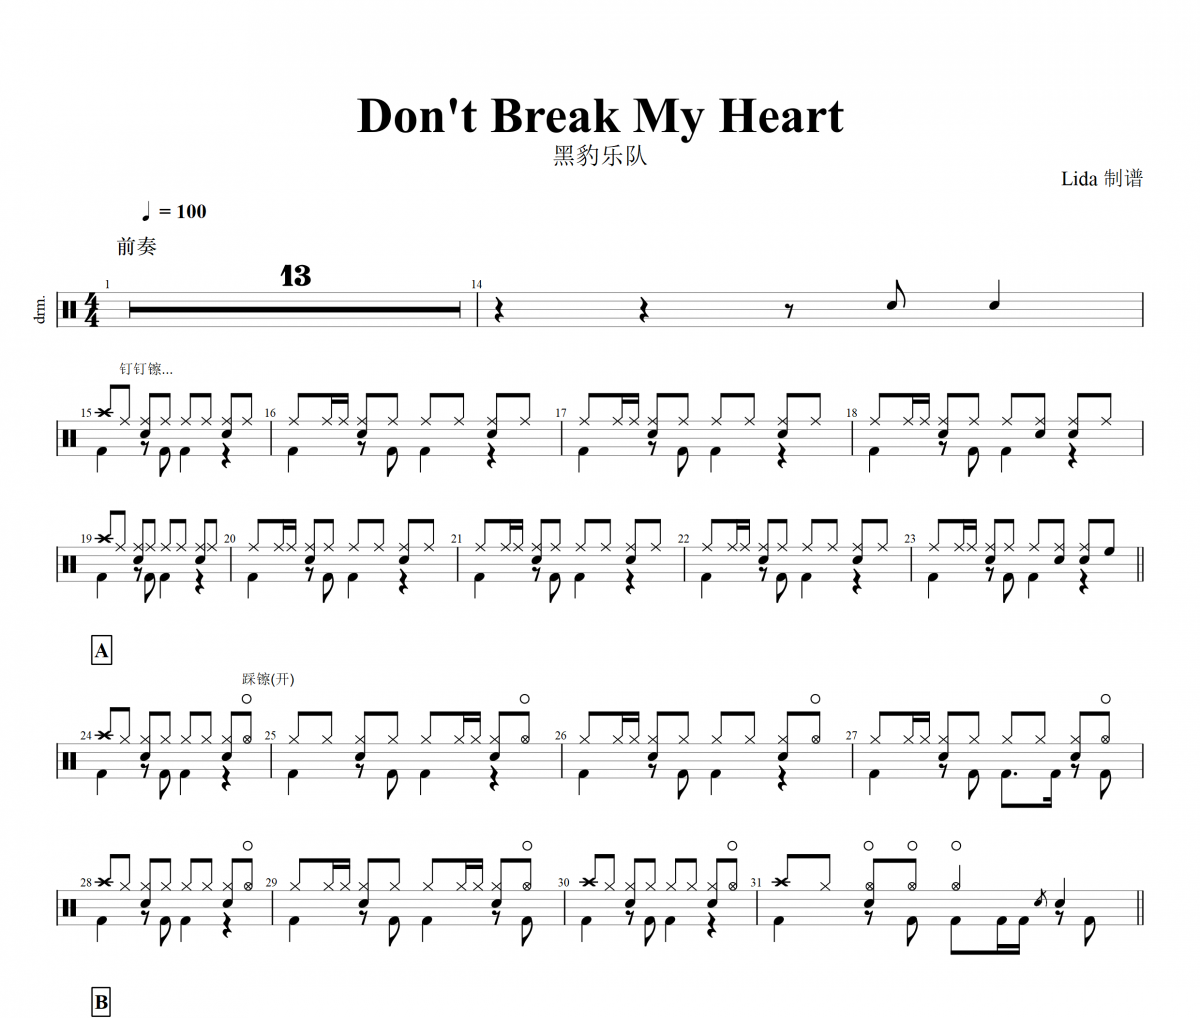 黑豹乐队 Don't Break My Heart鼓谱架子鼓谱爵士鼓曲谱子【高清谱】